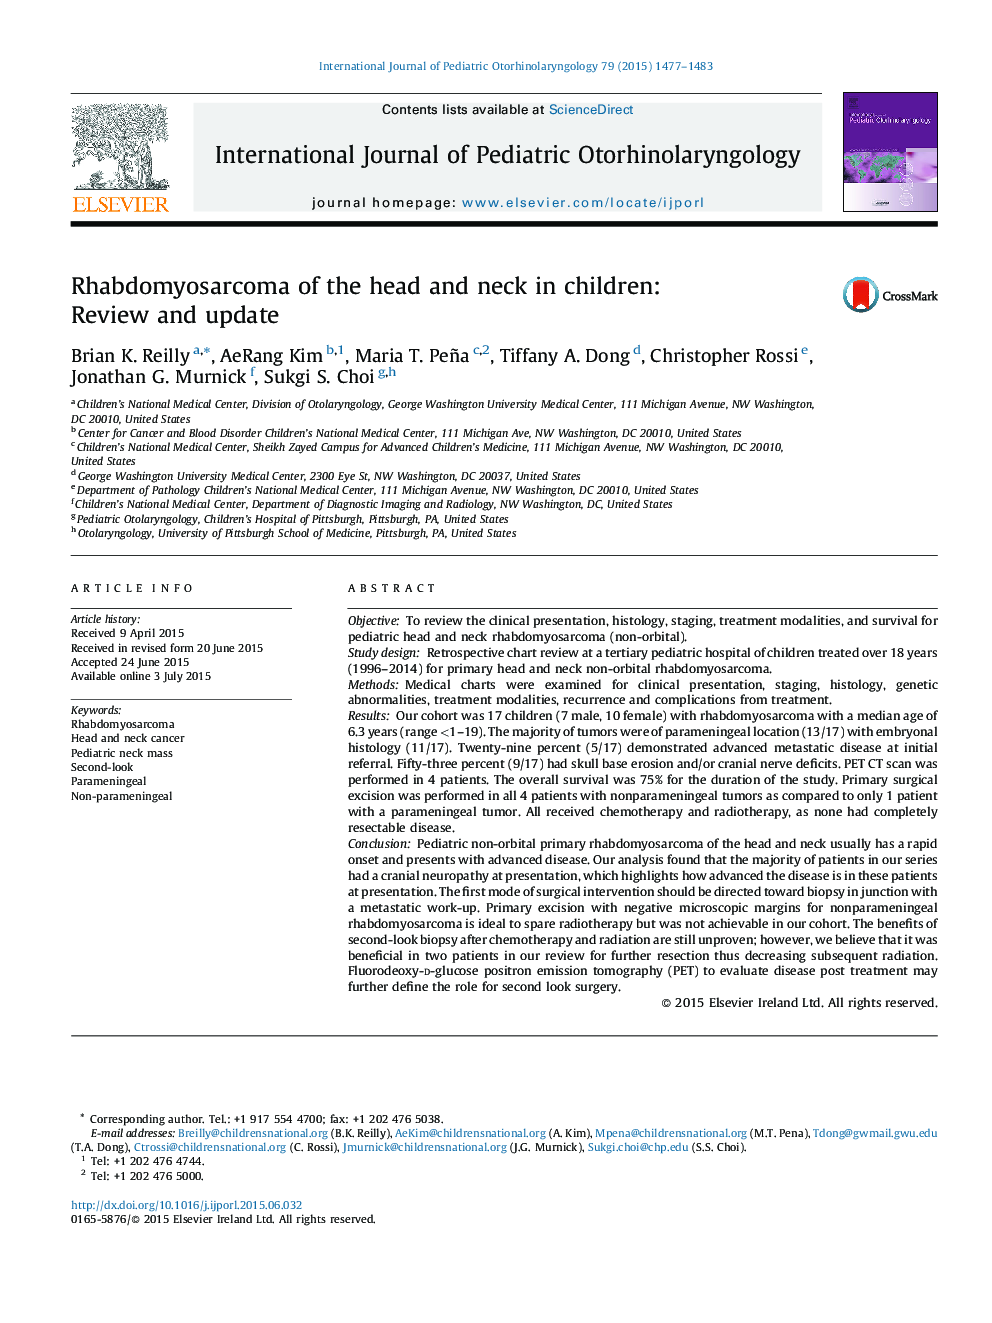 رابدومیوسارکوم سر و گردن در کودکان: مرور و به روز رسانی 